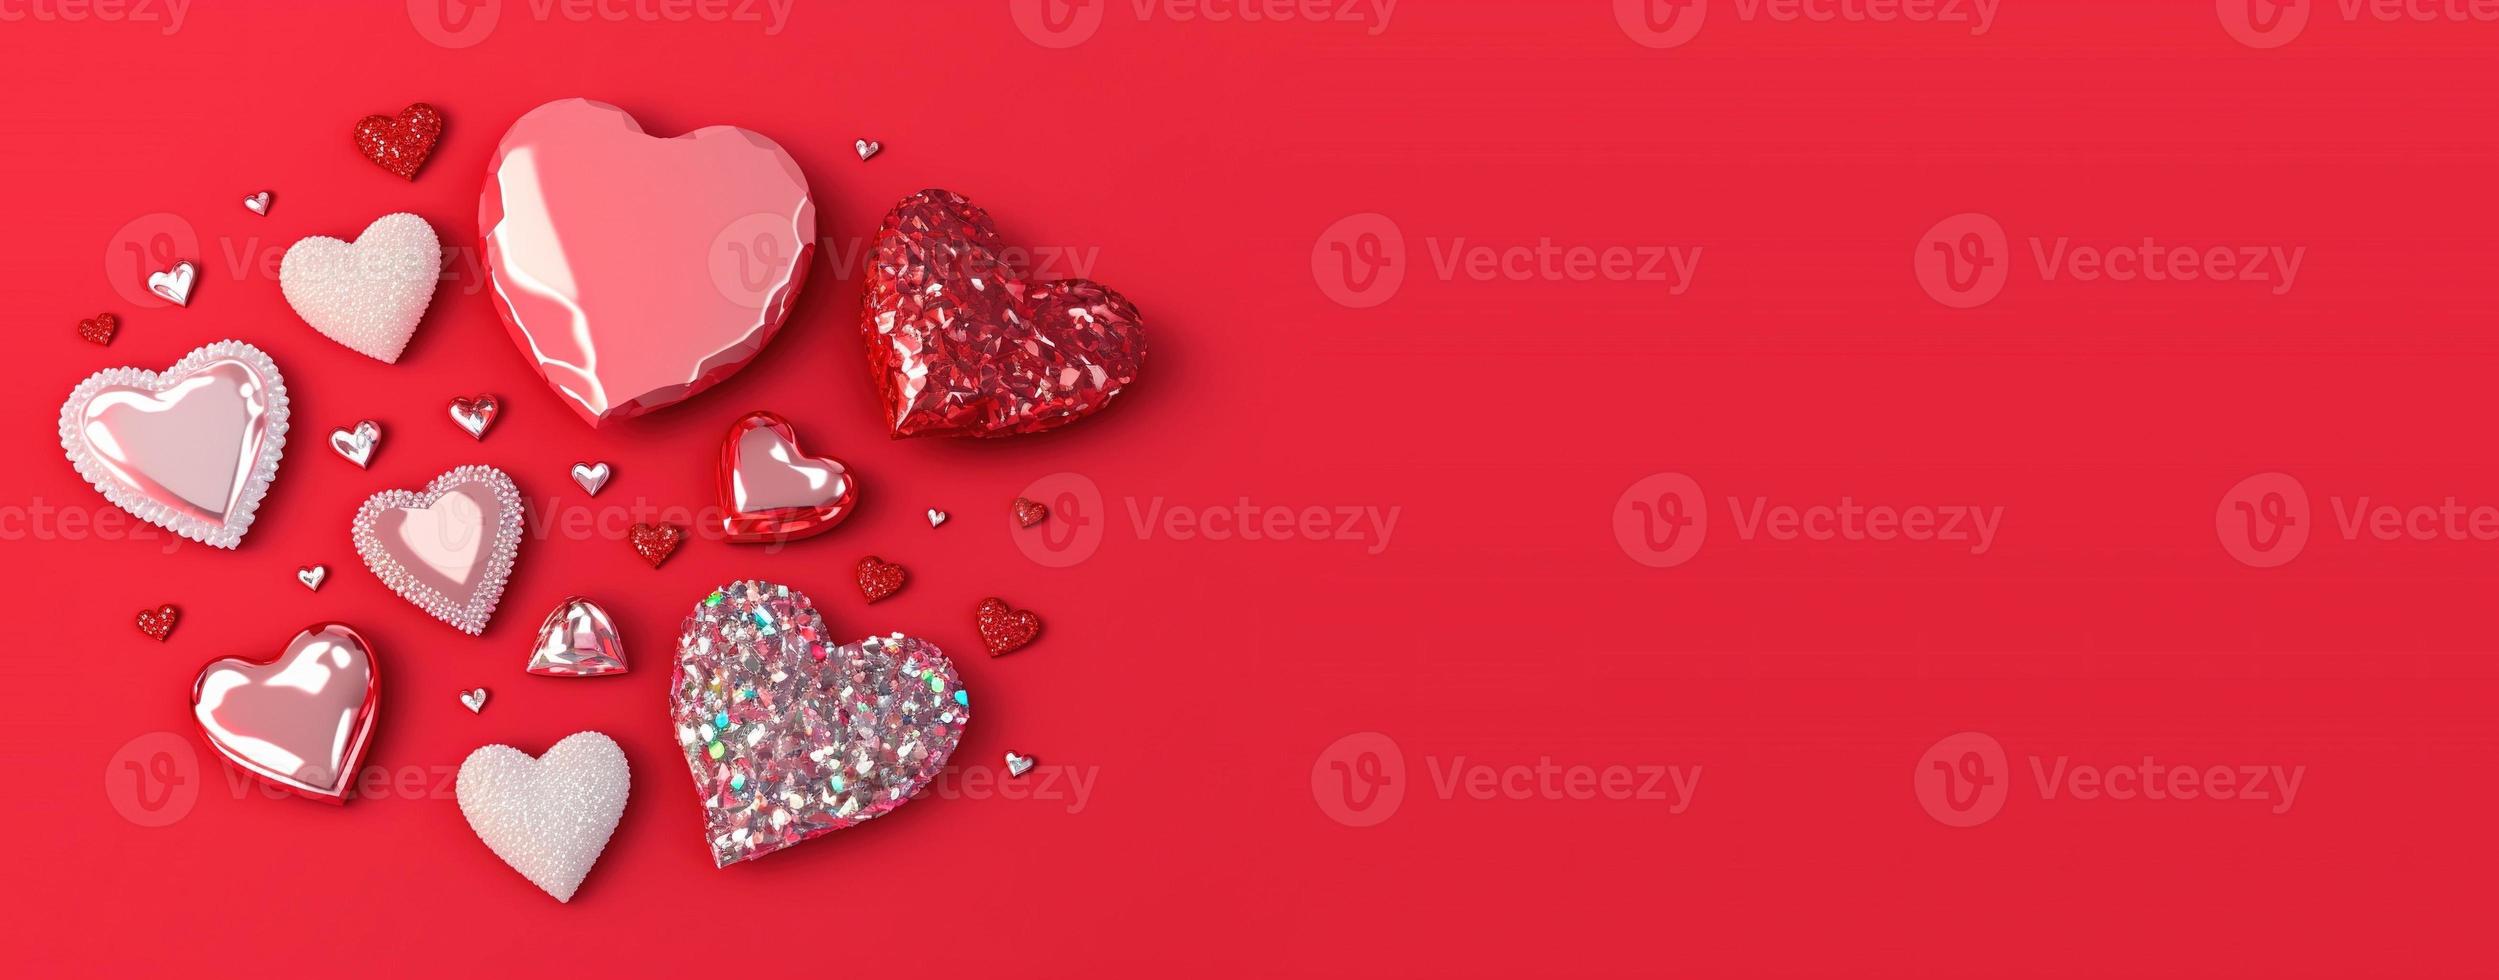 banner de ilustración de corazón 3d y diamante de cristal de san valentín foto